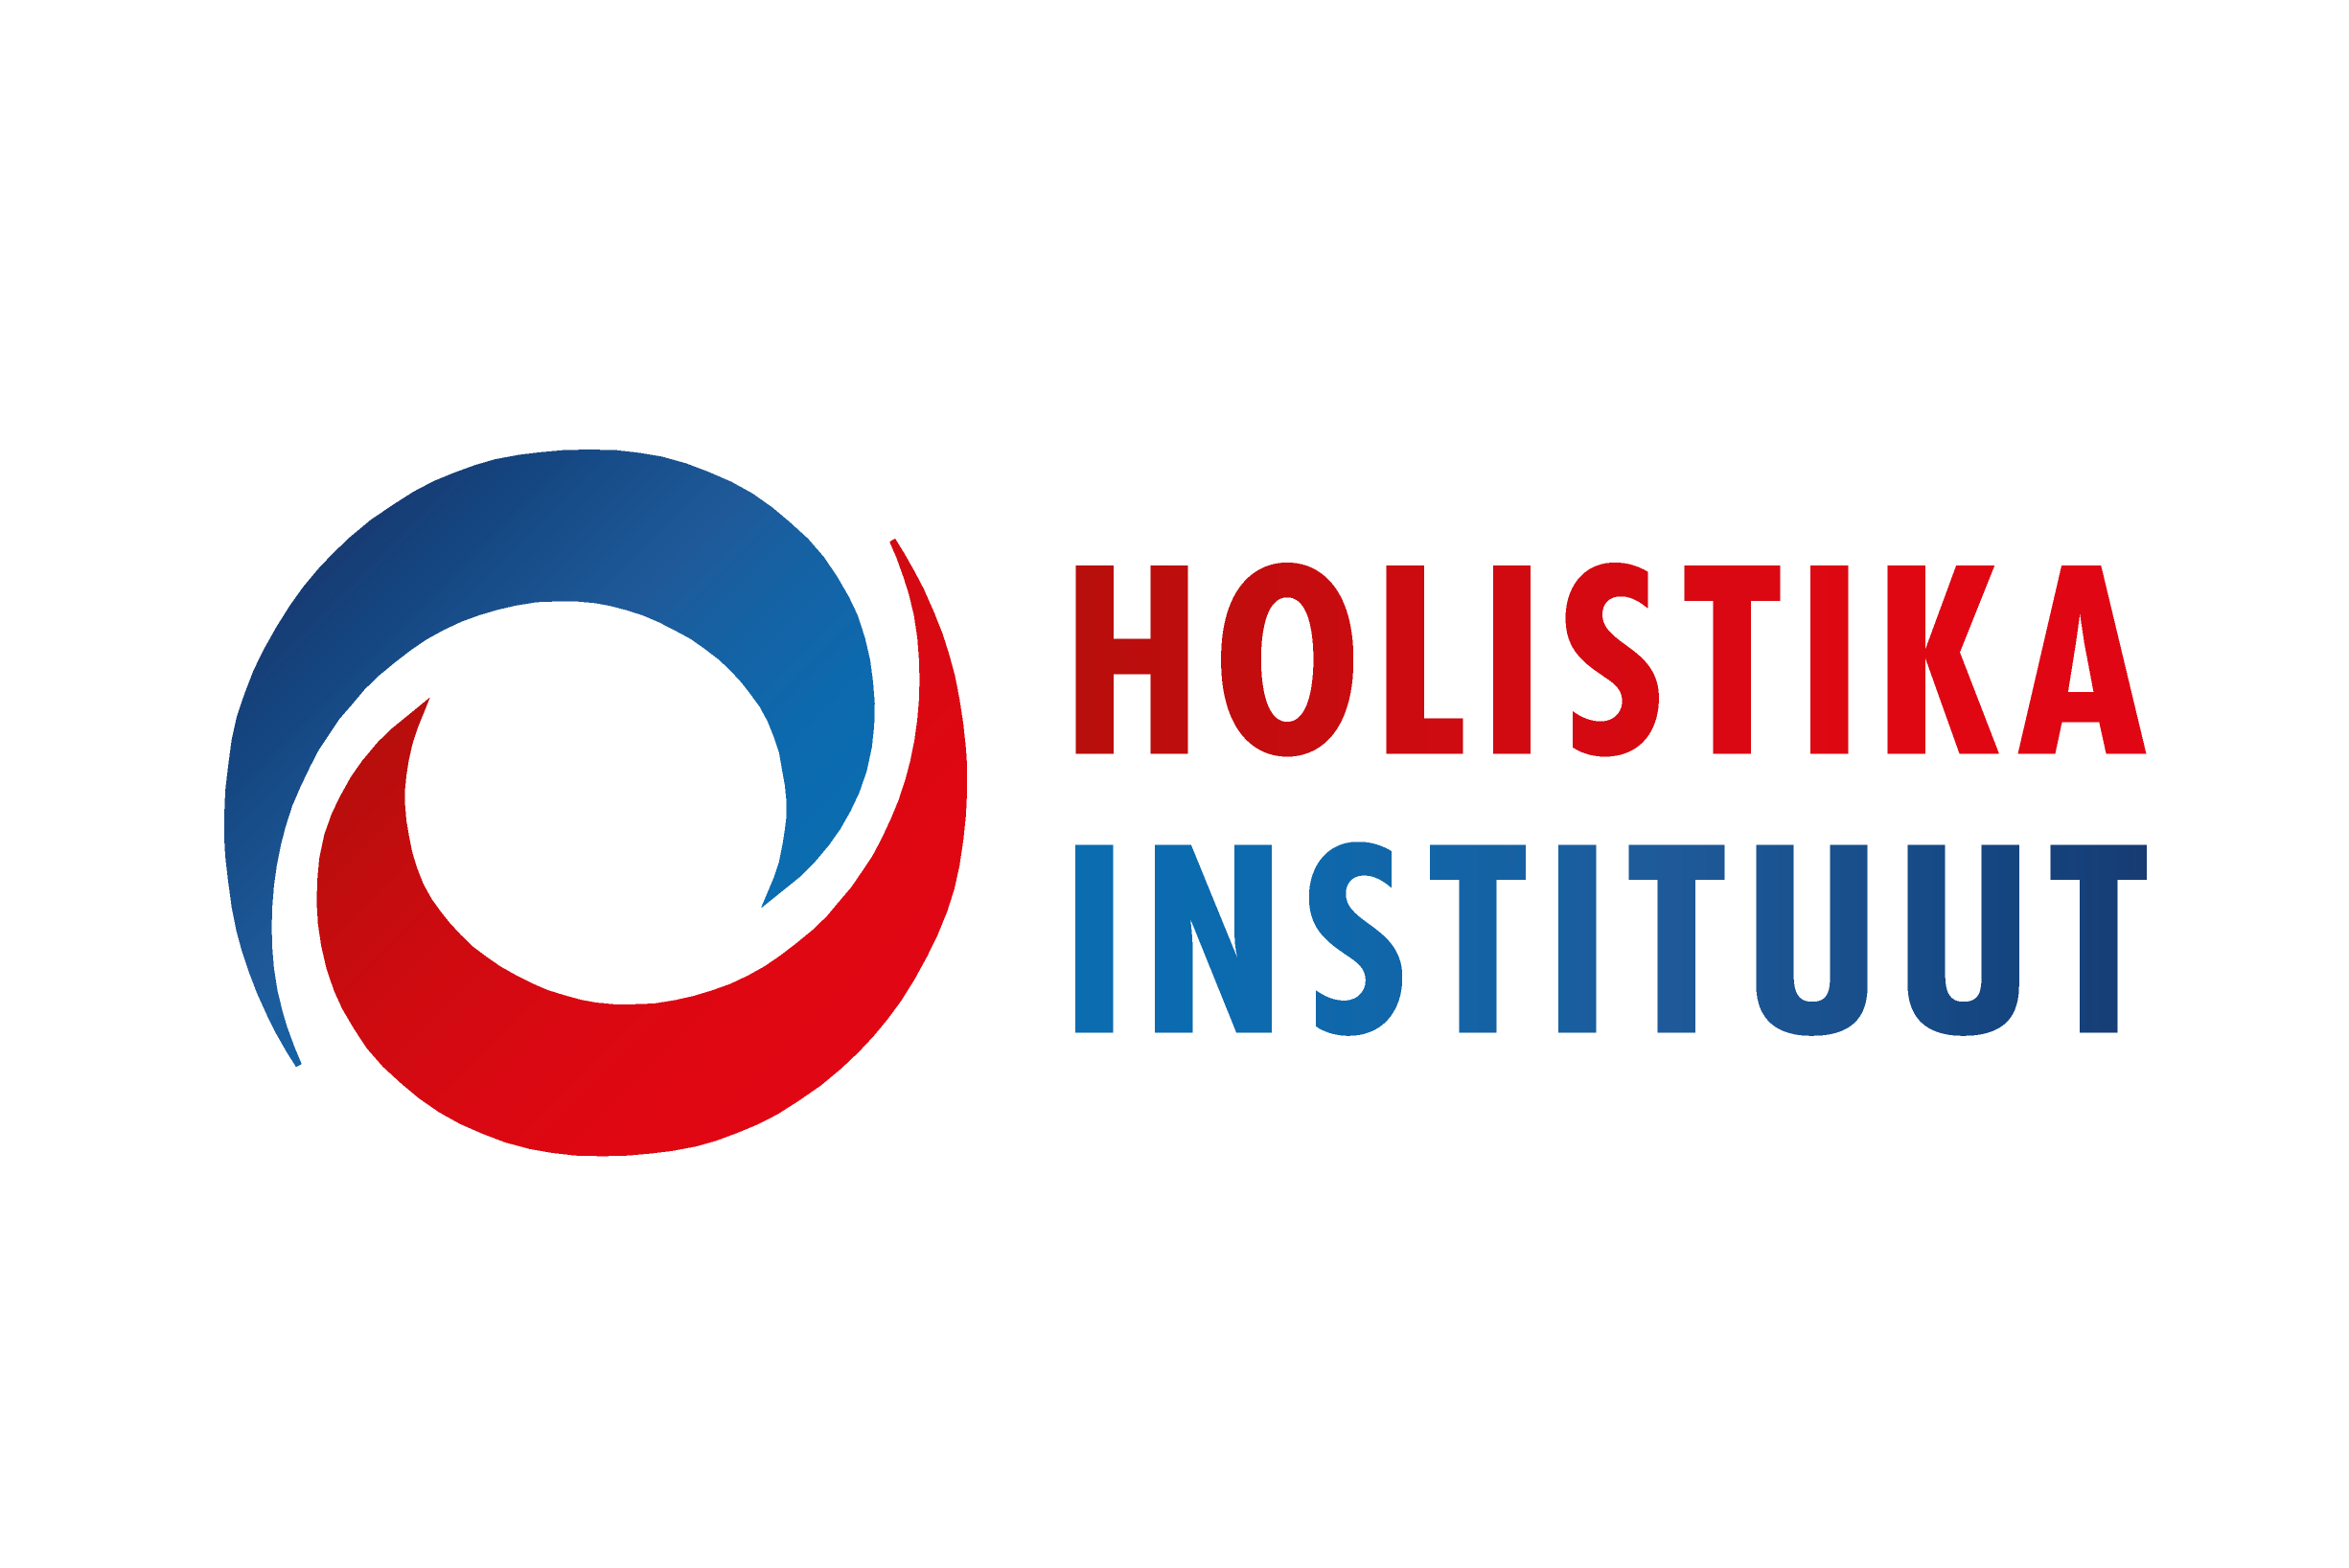 Holistika Instituut